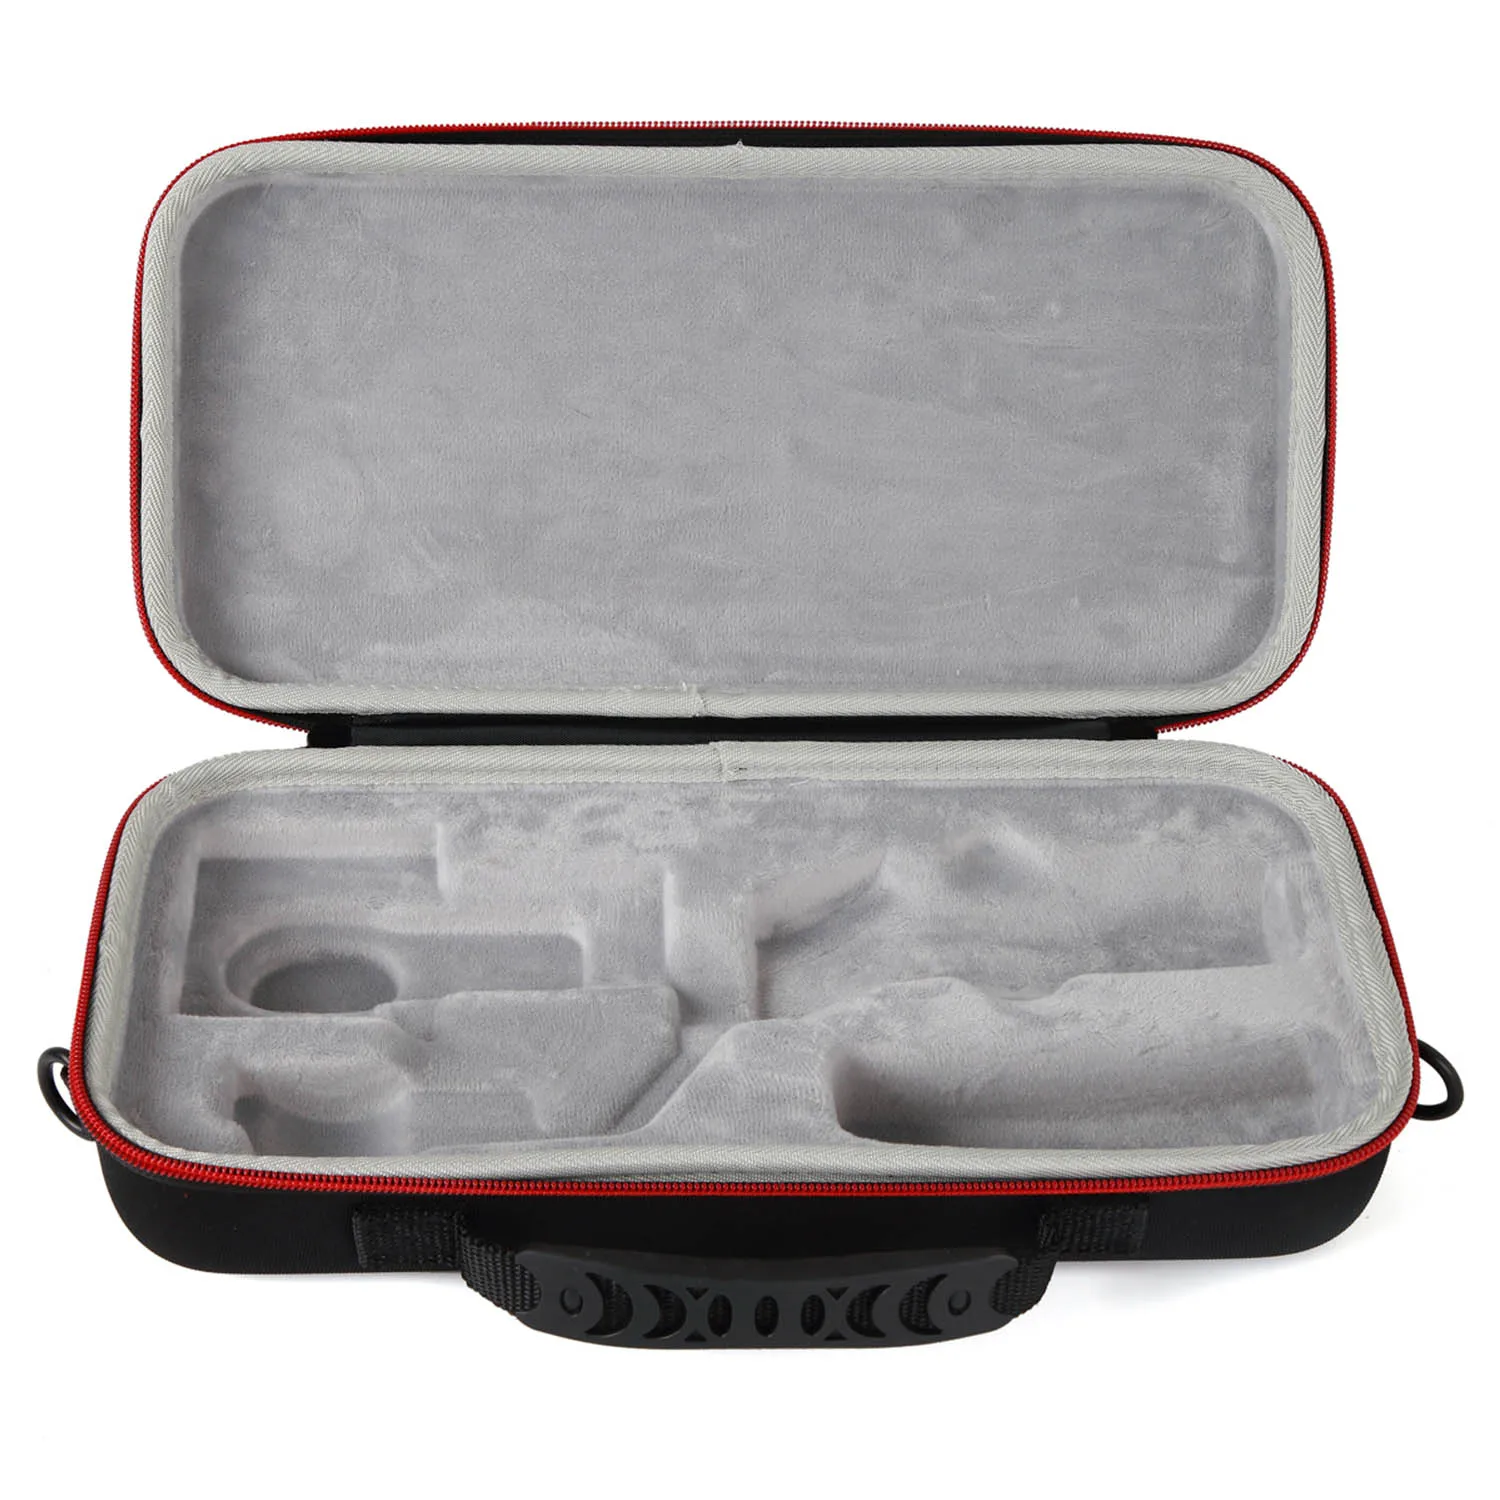 SUNNYLIFE портативный ручной Gimbal хранения сумка для переноски сумка защитный чехол Коробка для DJI OSMO Mobile 2 Mobile 2 аксессуары